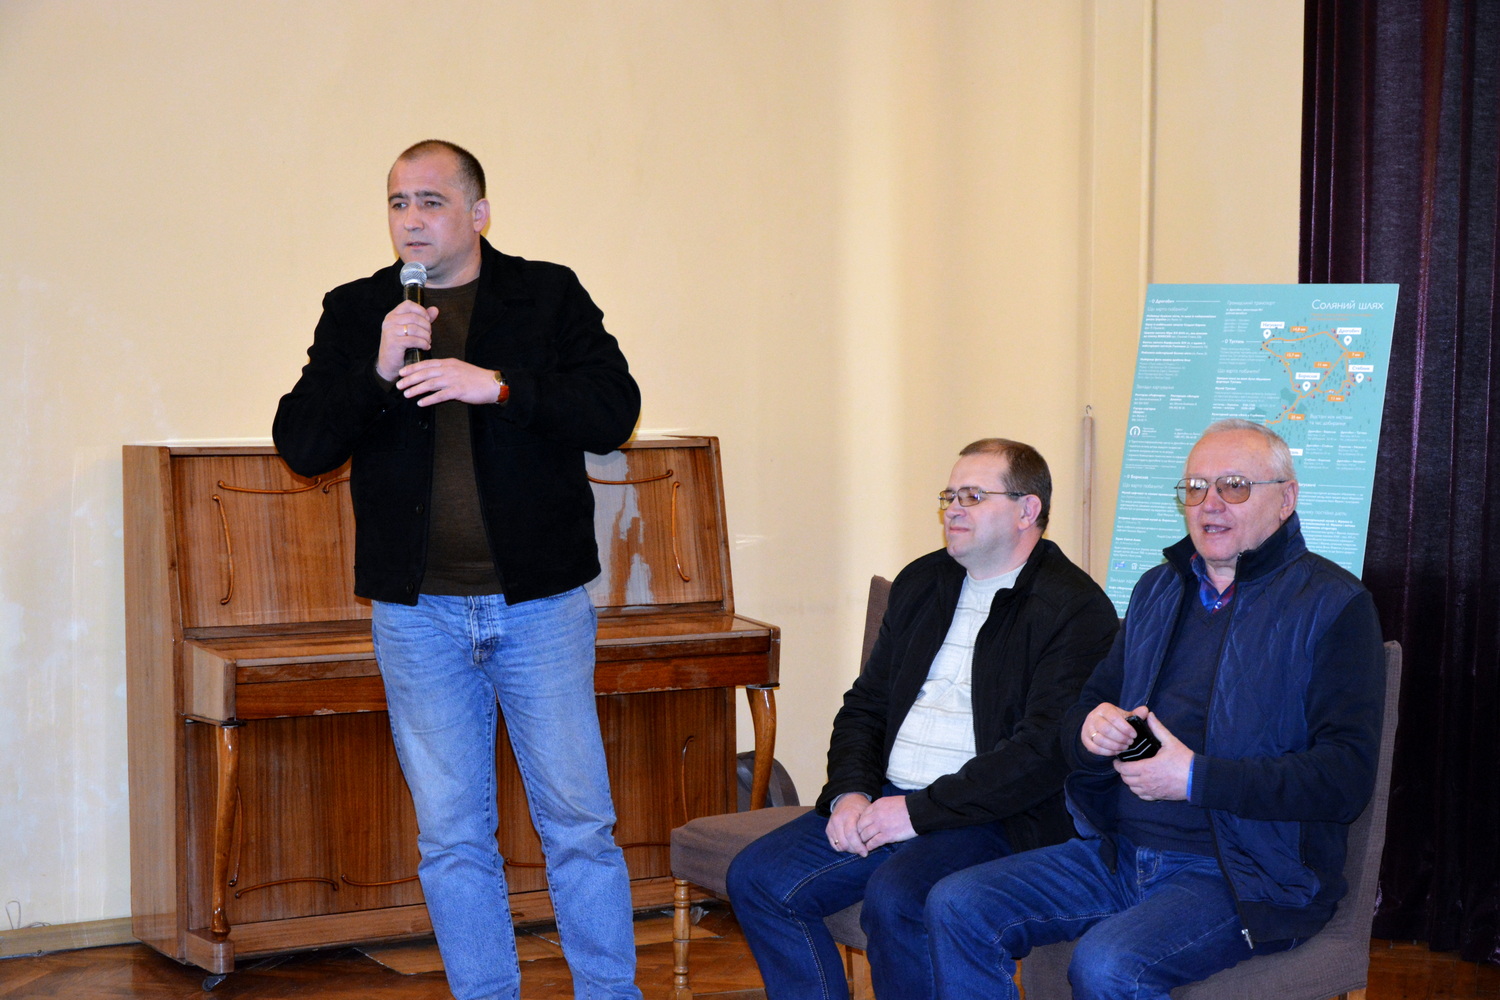 Представники ДІКЗ «Нагуєвичі» взяли участь у форумі «Соляний шлях дрогобицької громади»